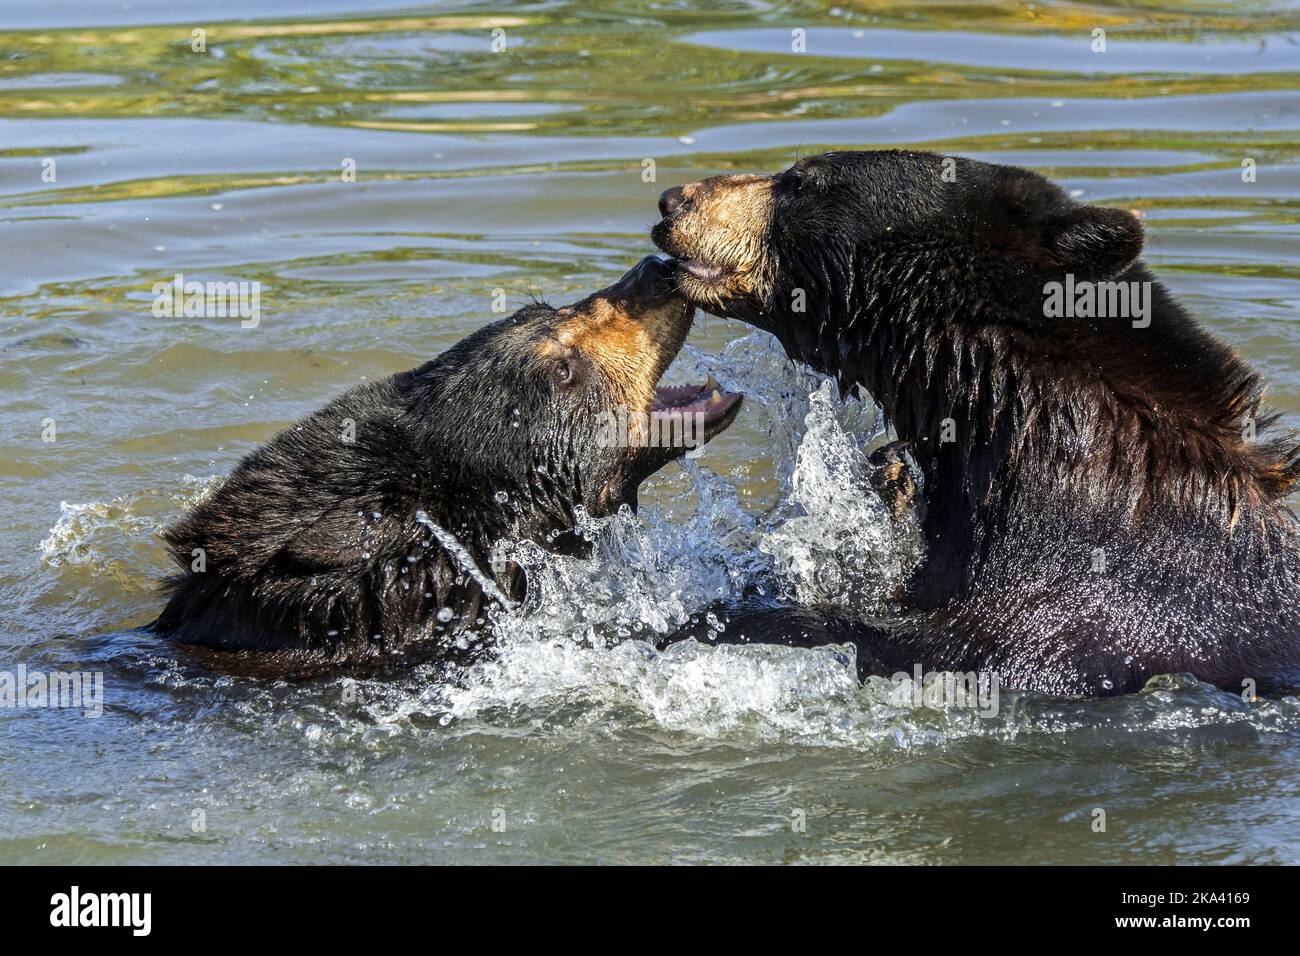 Zwei amerikanische Schwarzbären (Ursus americanus) spielen Kampf / Spielkampf / Spielen und Planschen im Wasser des Teiches Stockfoto